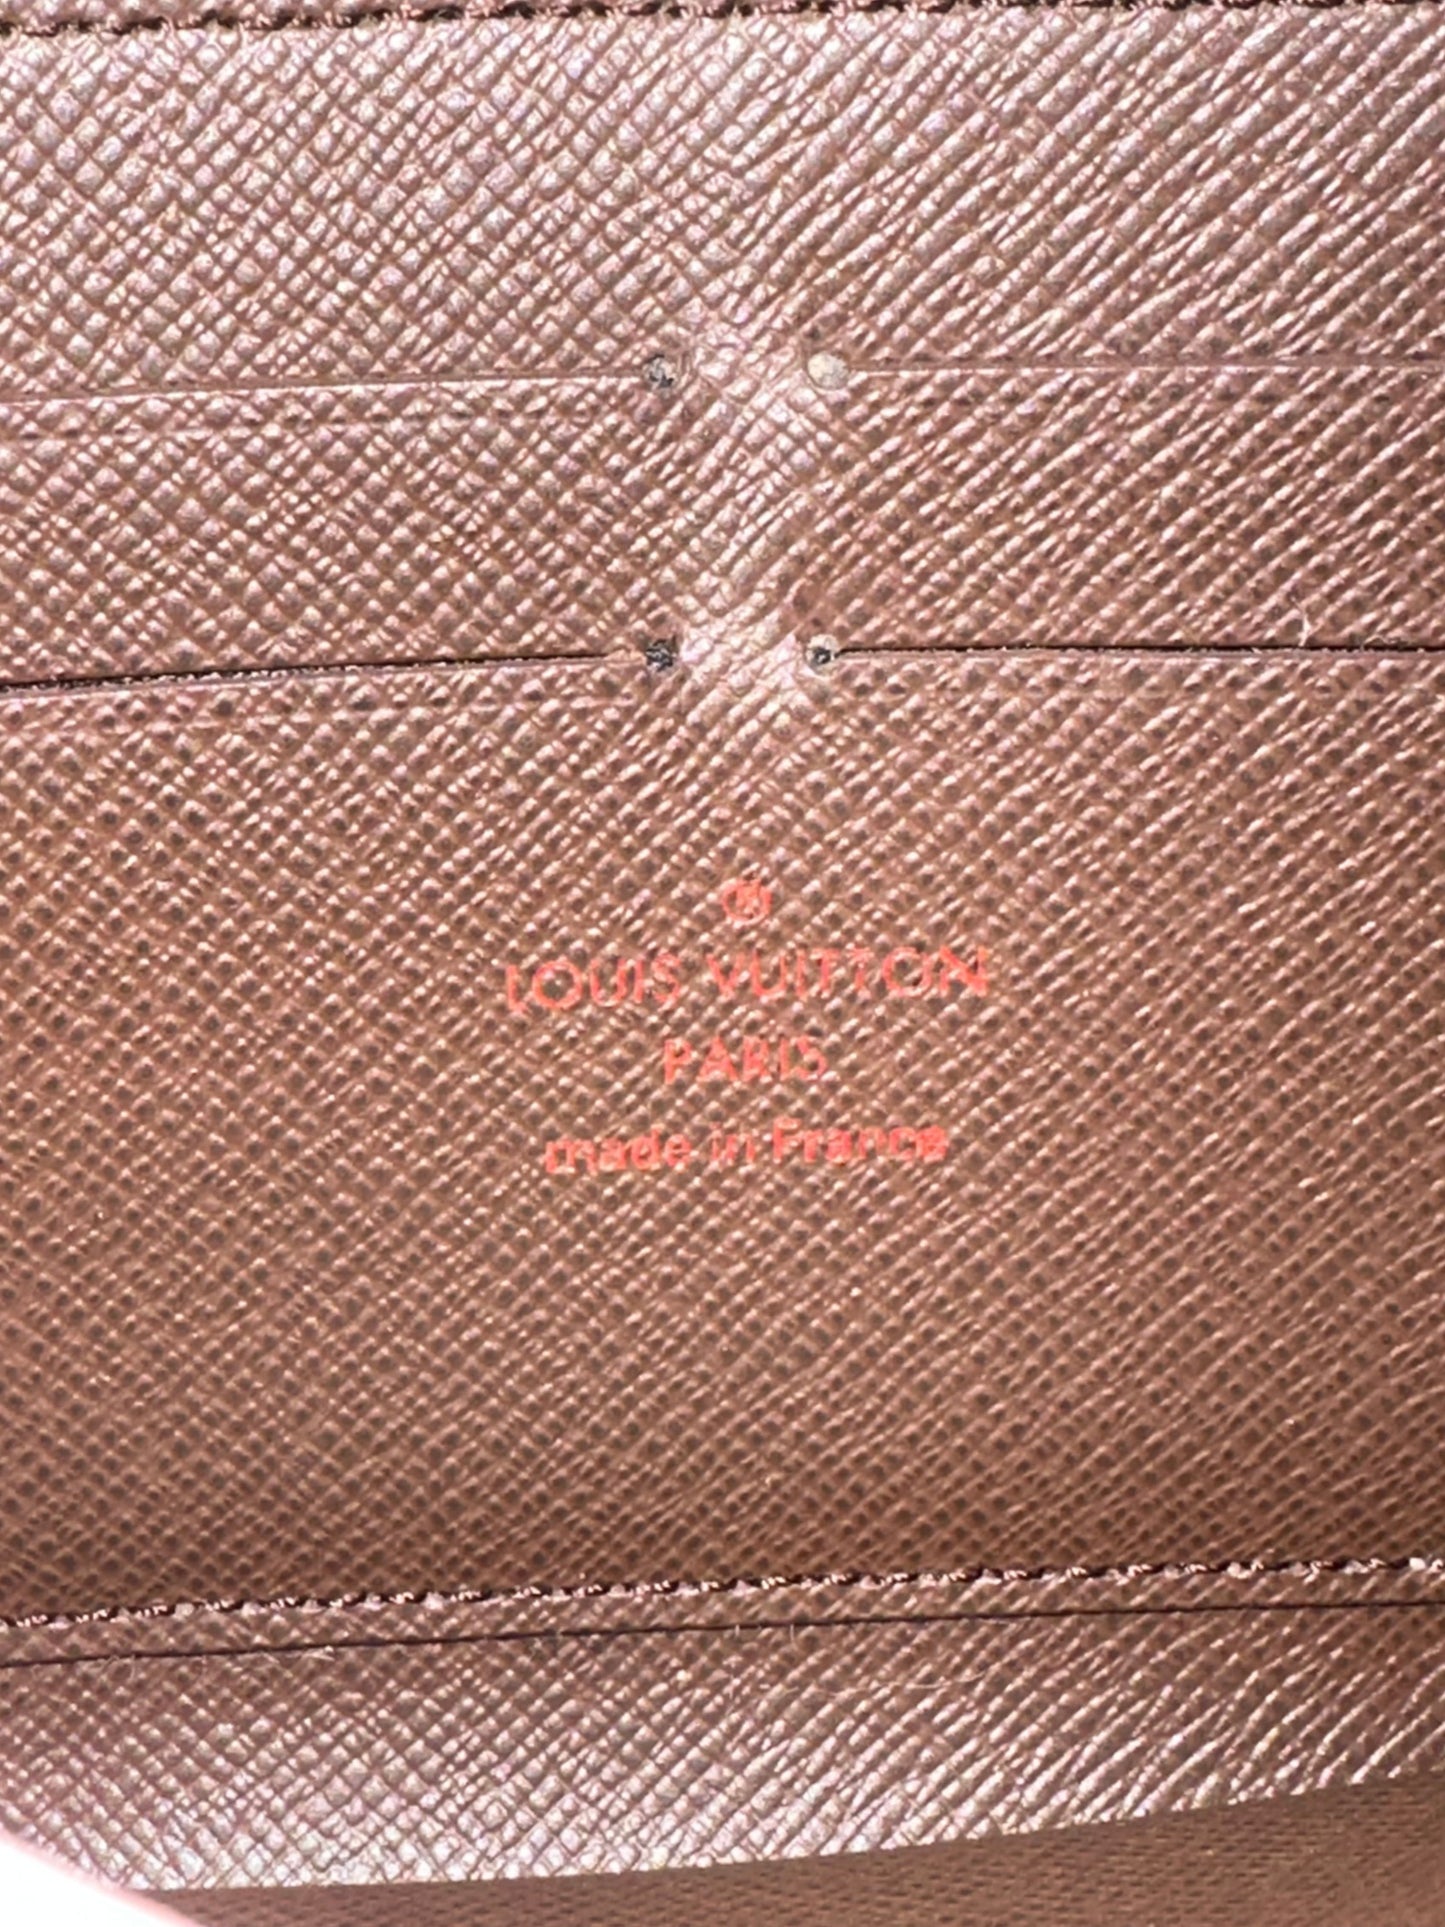 Pre-owned Authentic Louis Vuitton Damier Ebene Zippy Long Wallet